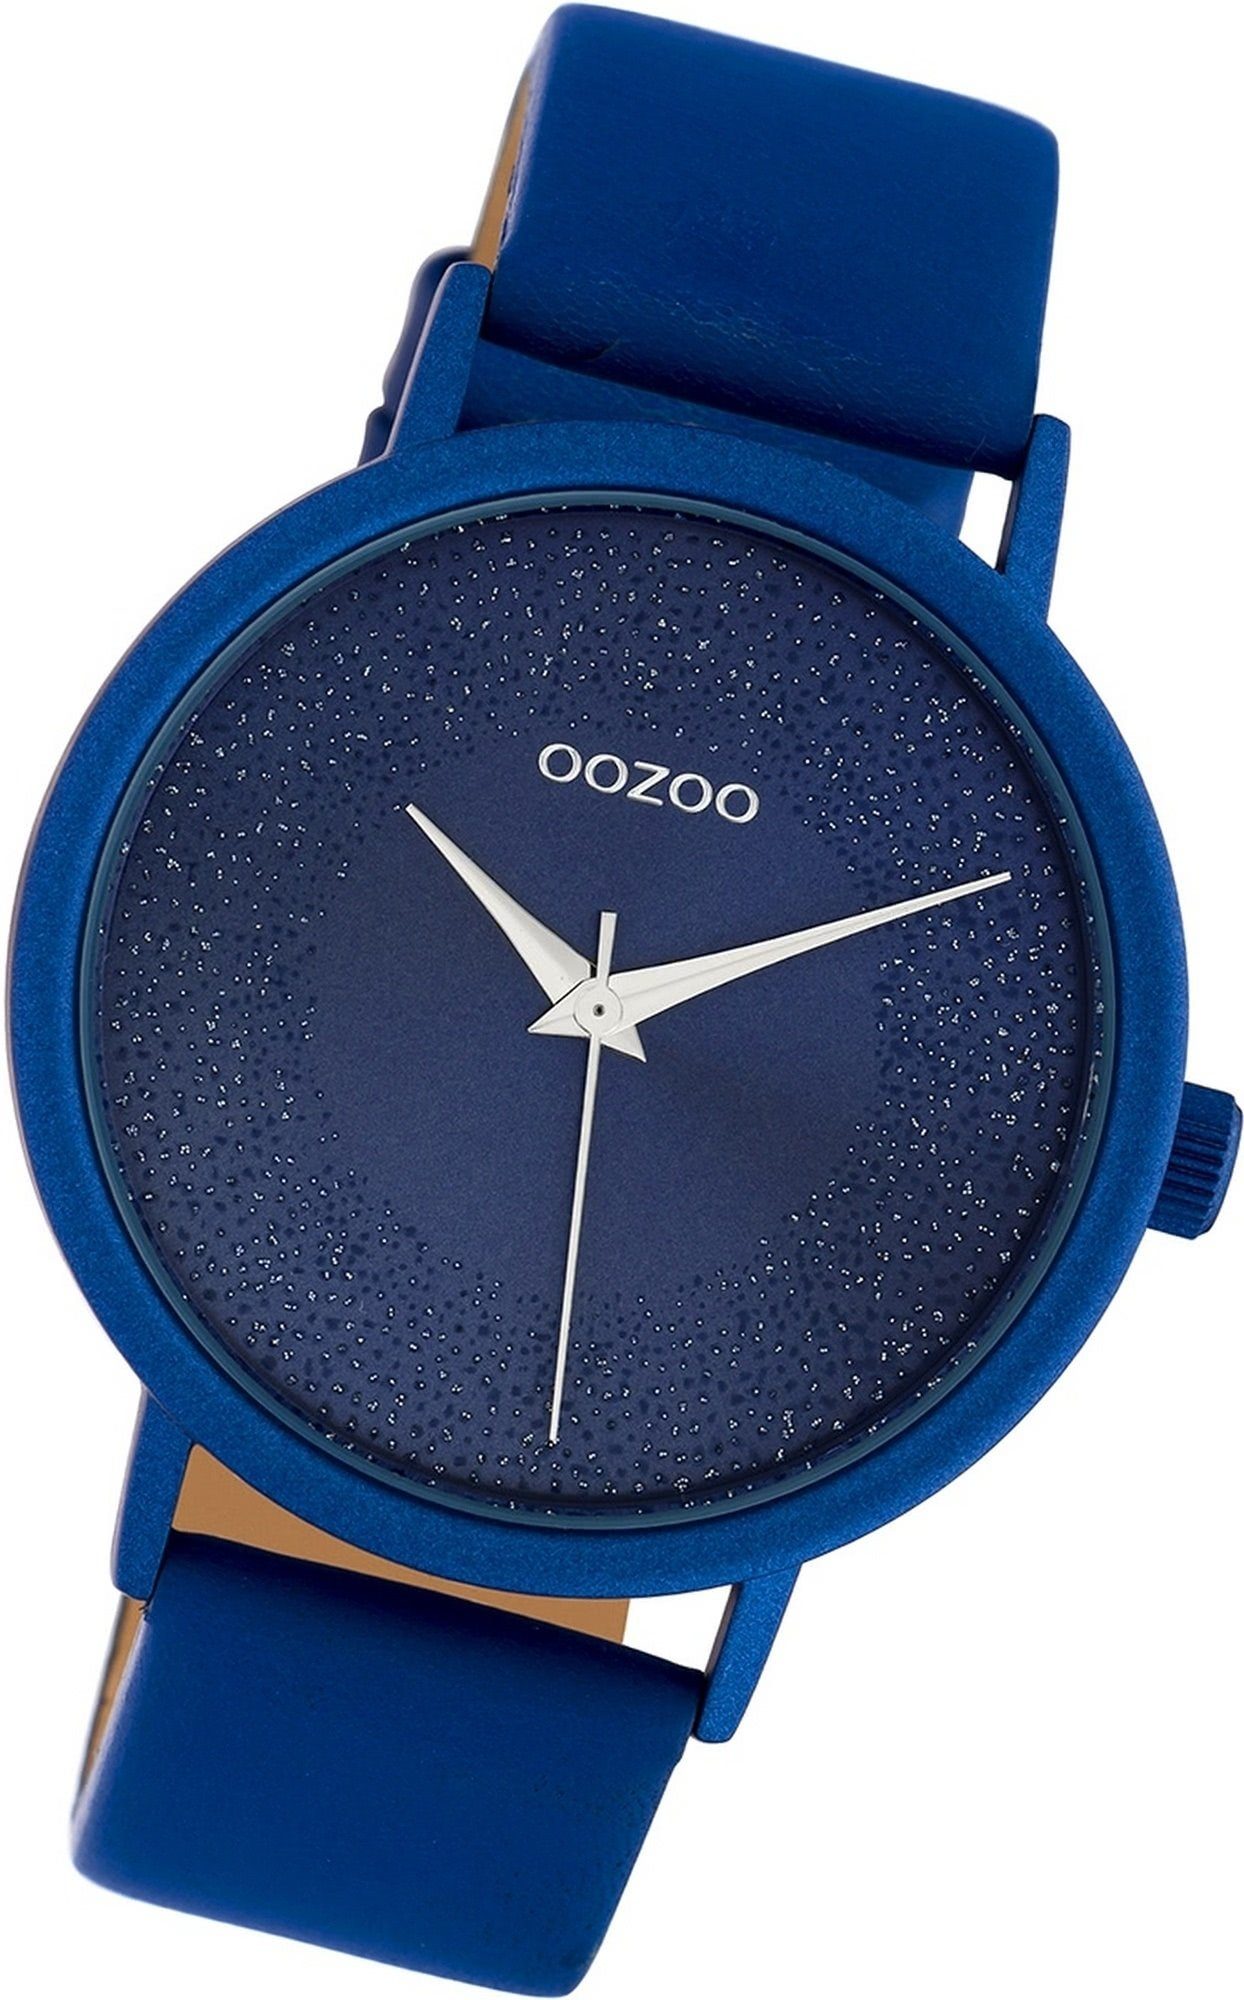 OOZOO Quarzuhr Oozoo Leder Damen Damenuhr Lederarmband 40mm) blau, Gehäuse, C10583 groß (ca. Uhr Analog, rundes